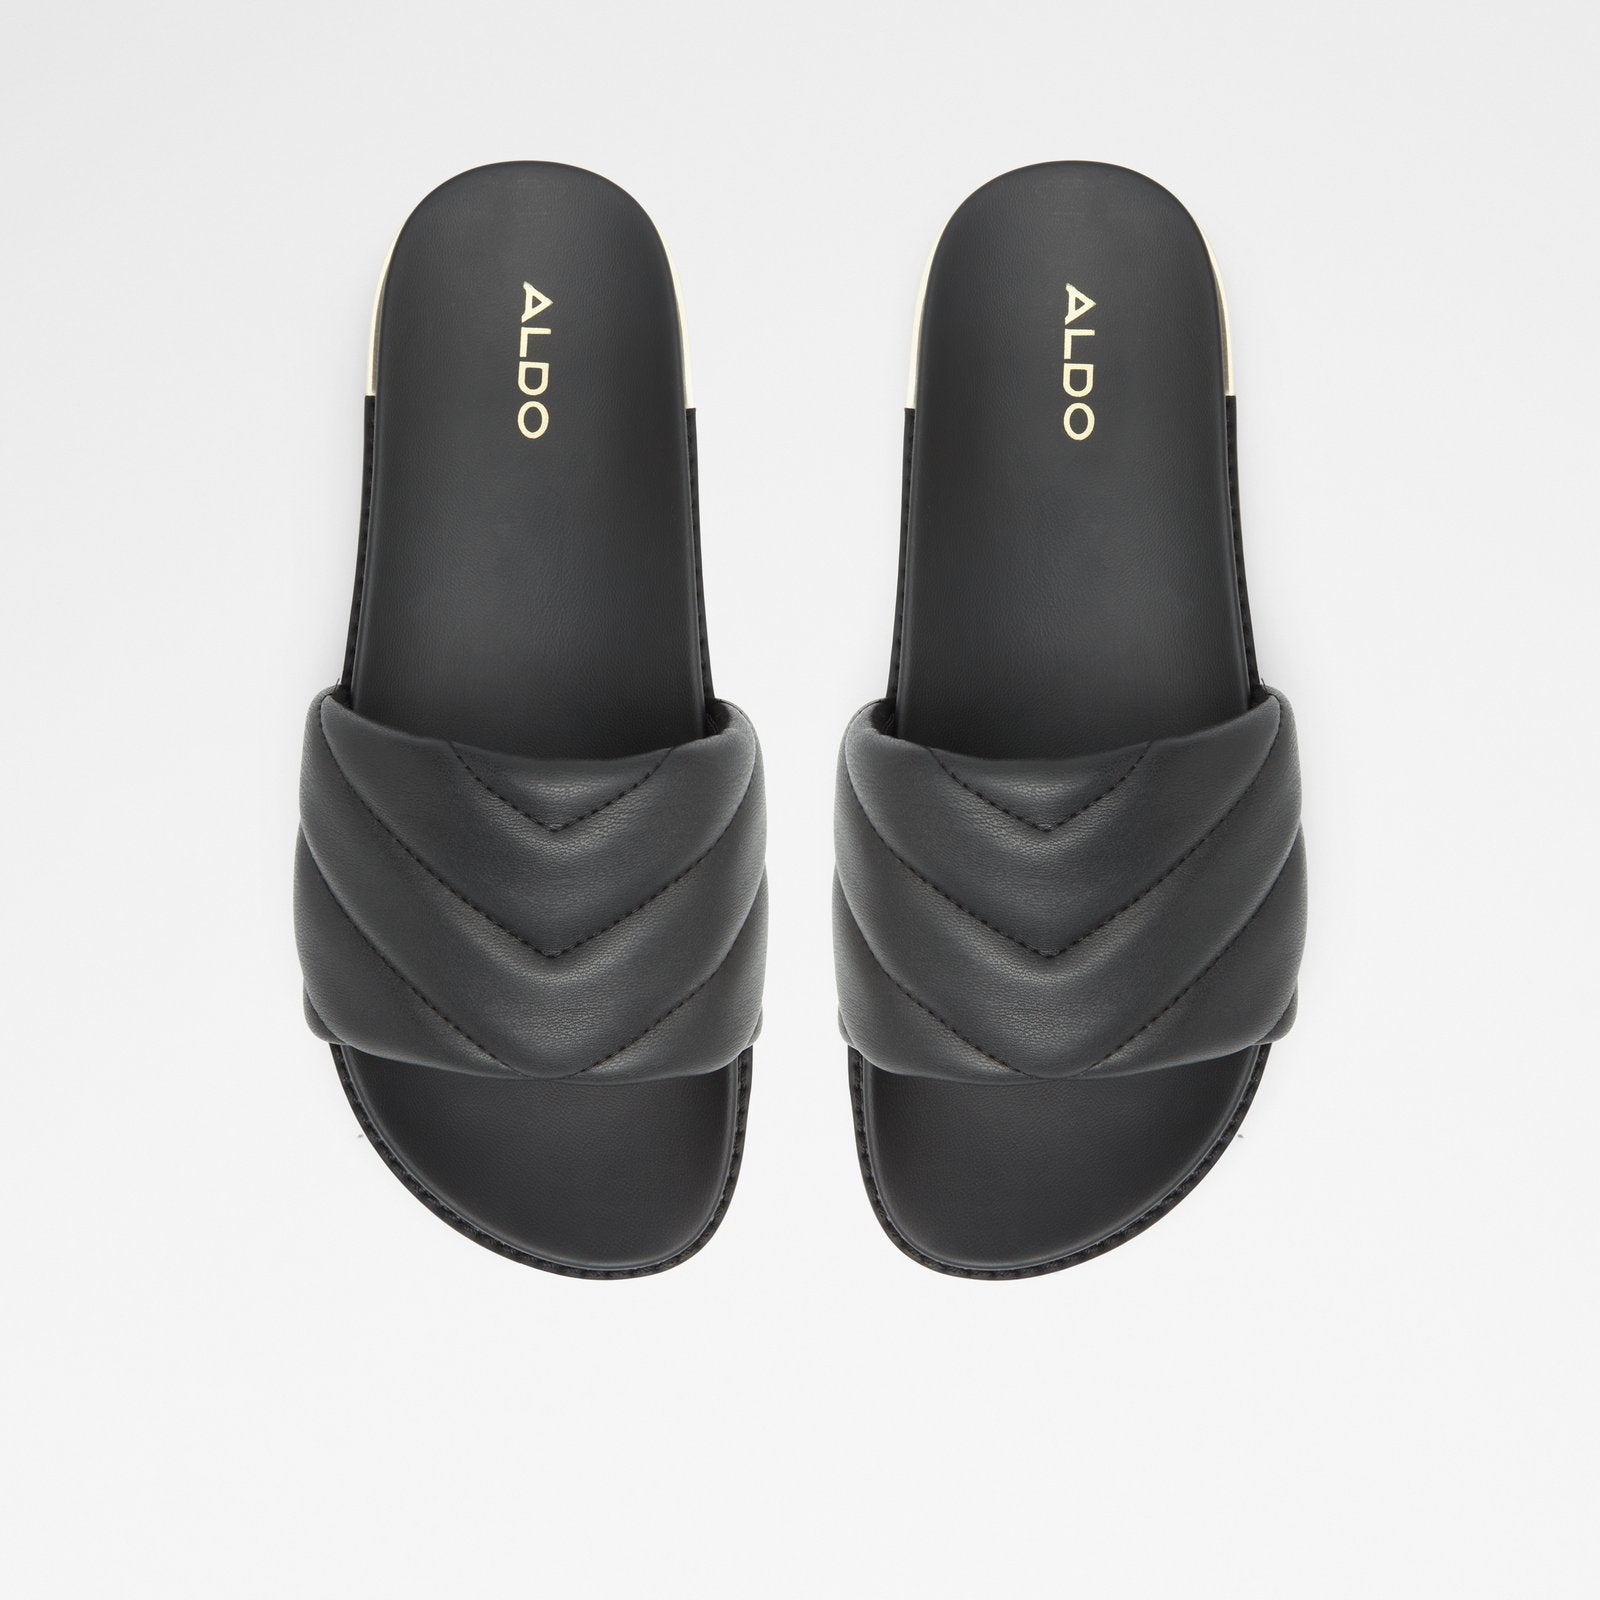 Acaswen Women Shoes - Black - ALDO KSA